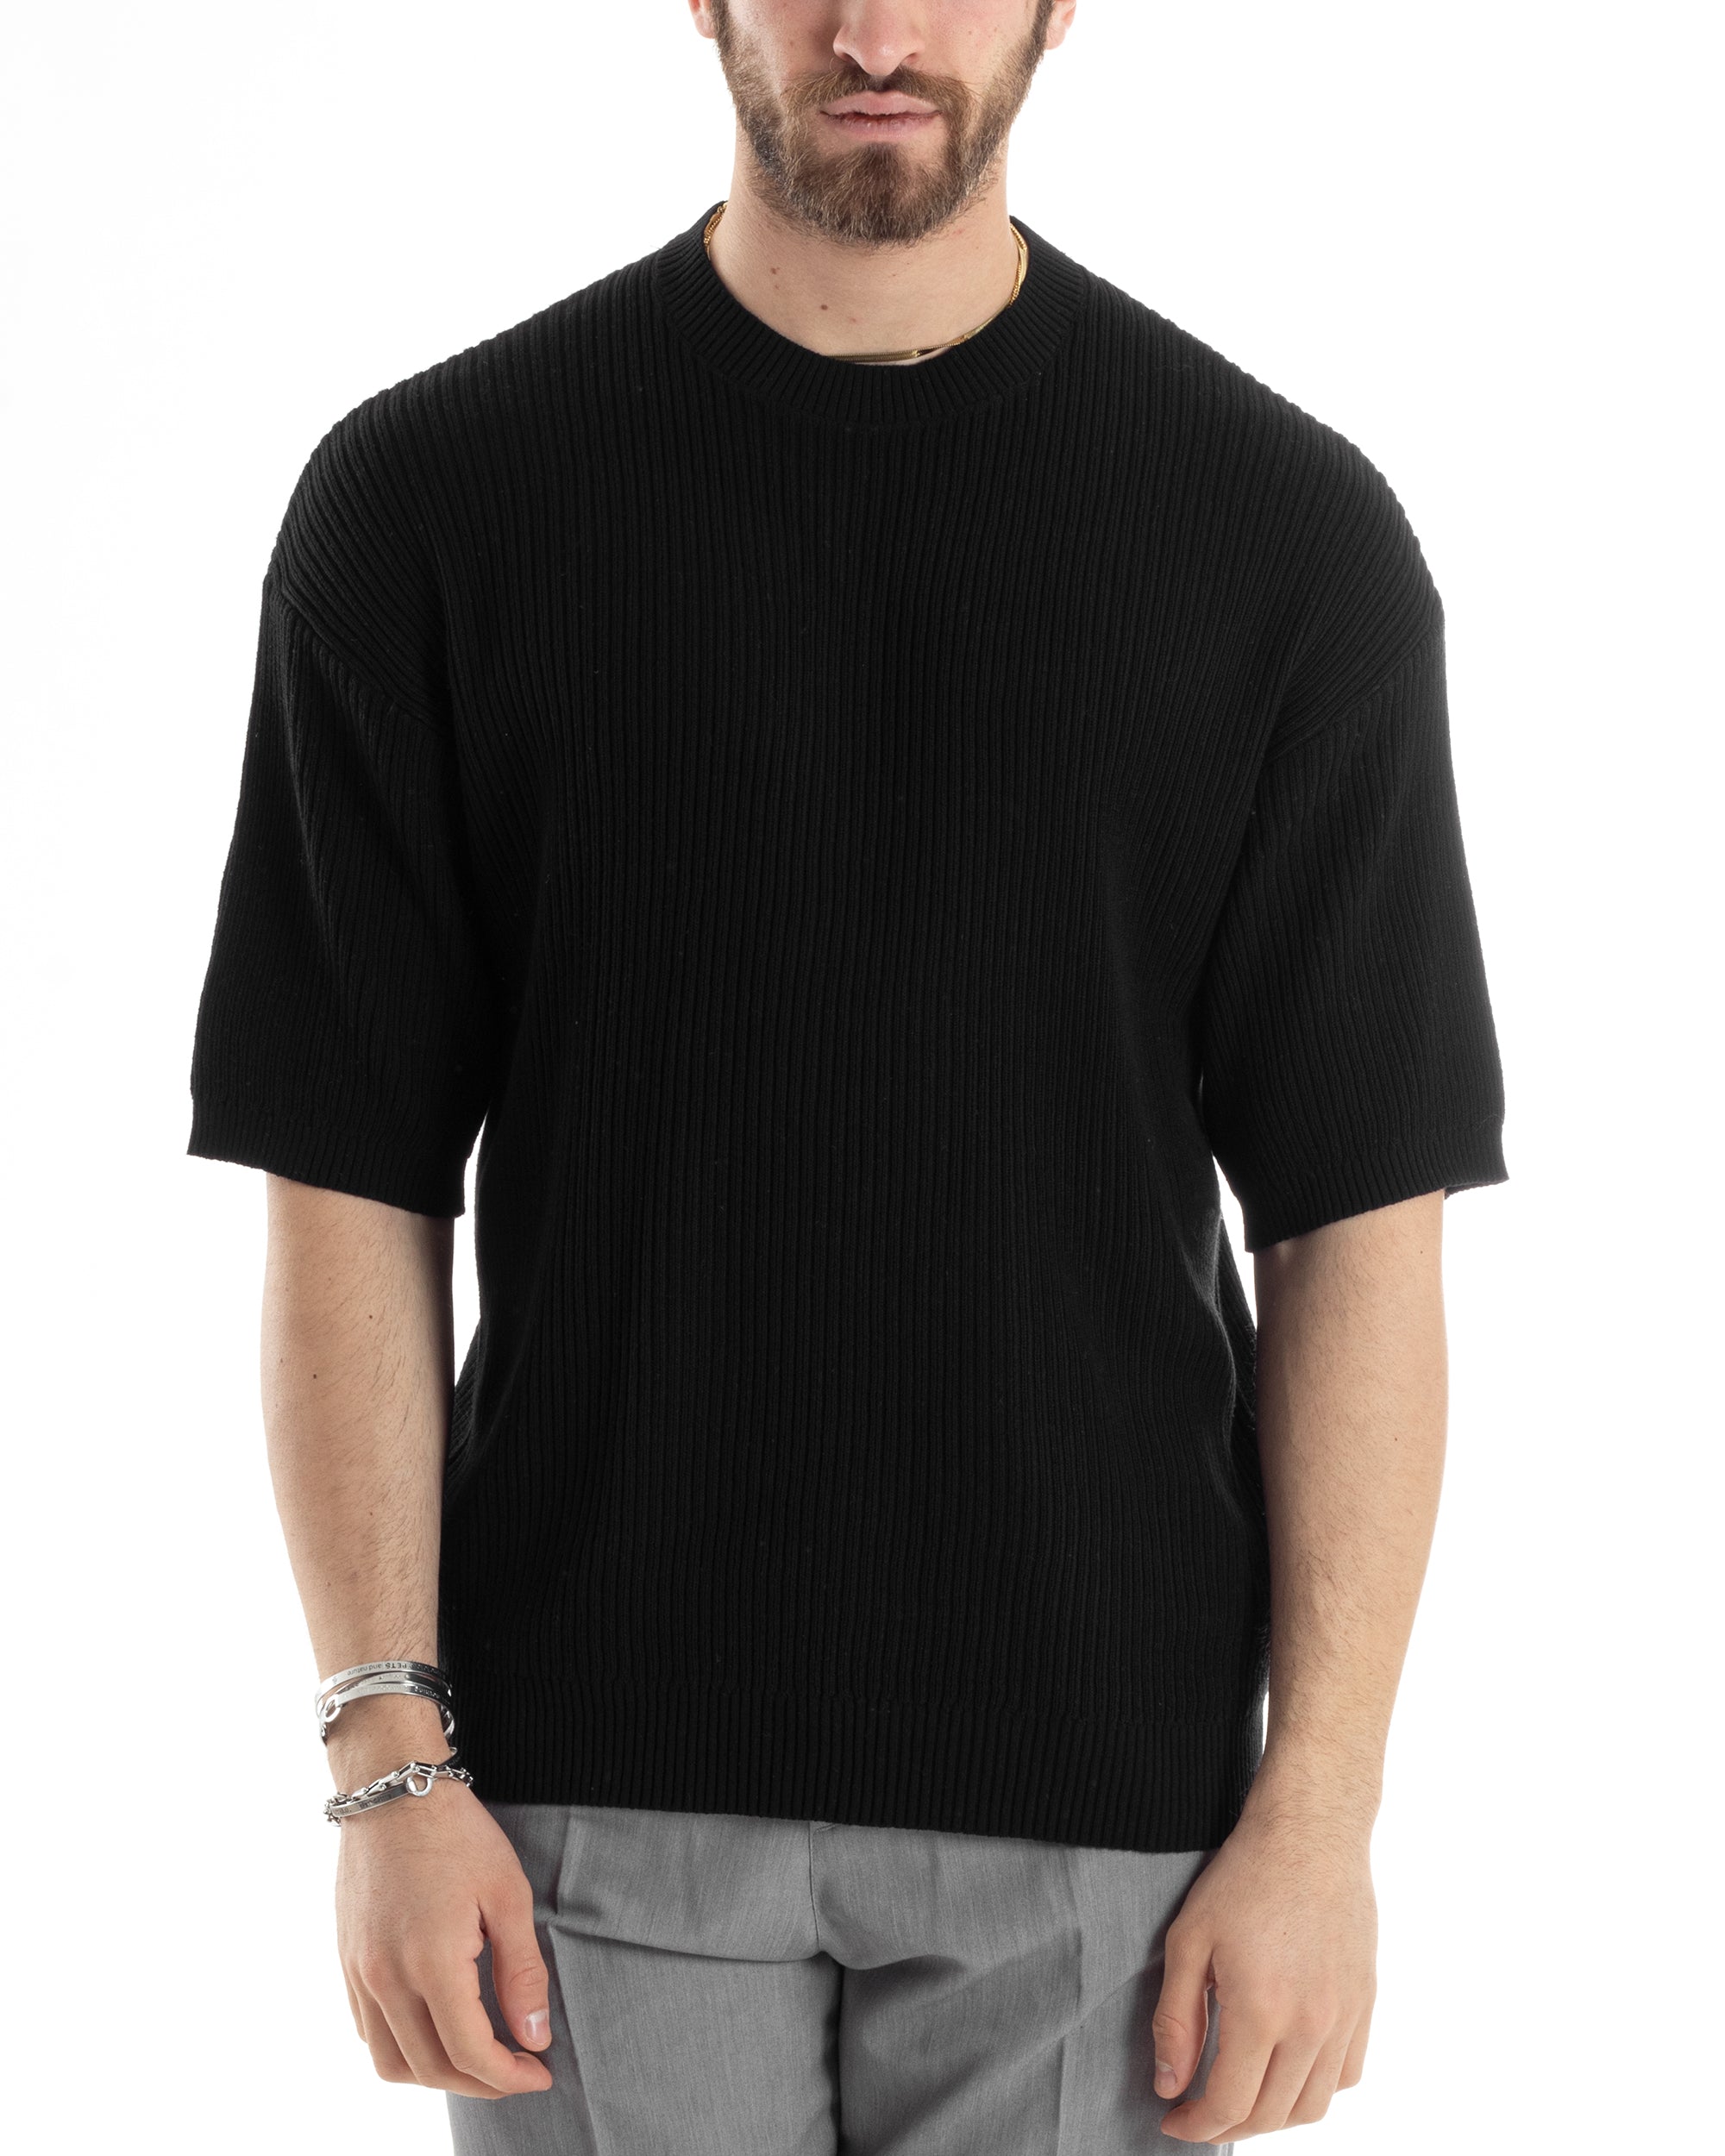 T-shirt Uomo Maglia In Filo A Costine Manica Corta Basic Oversize Nero Casual GIOSAL-TS2999A